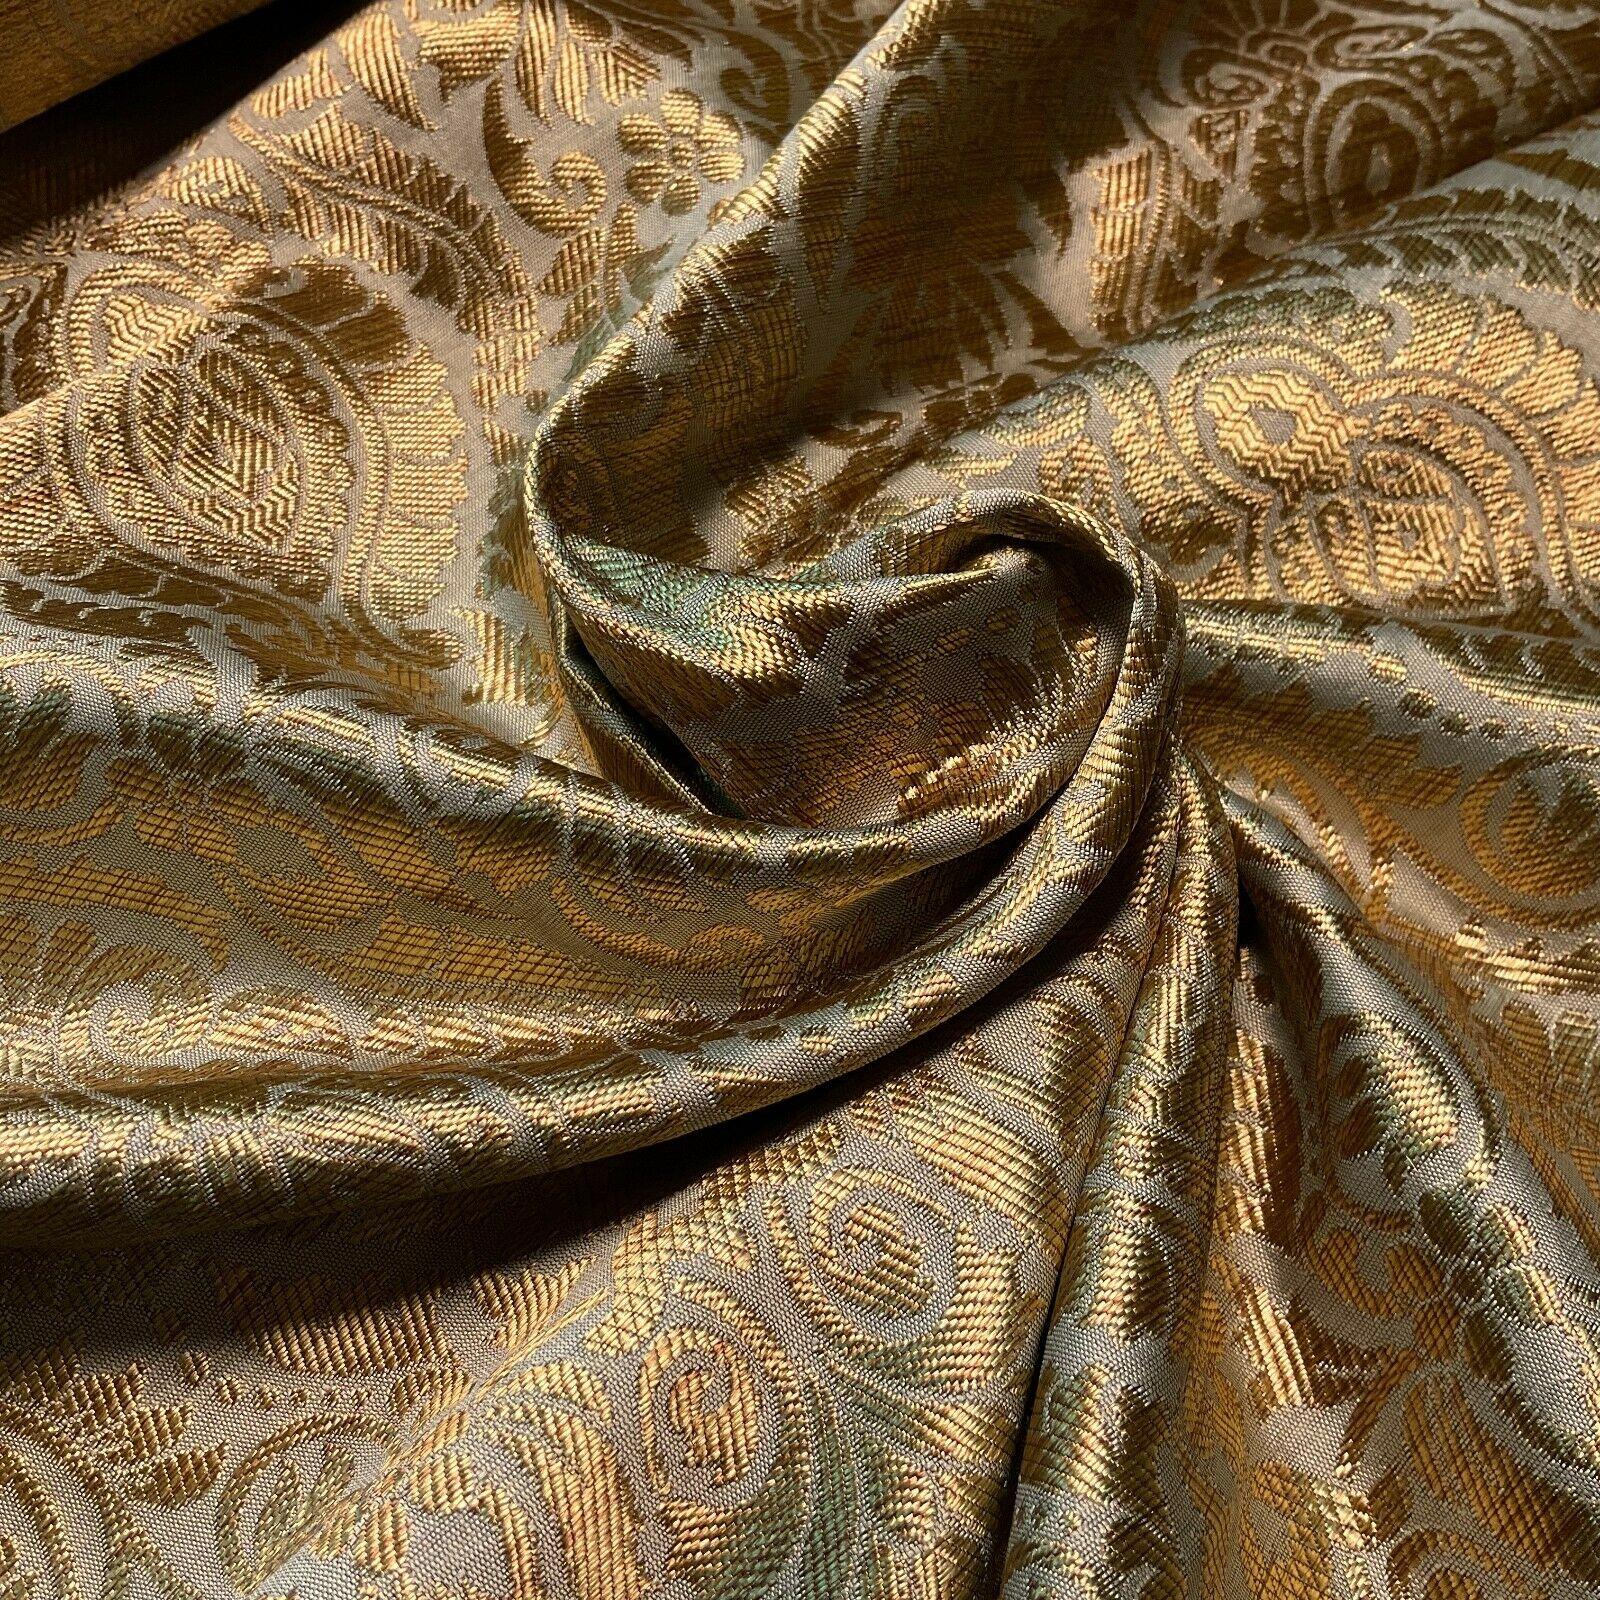 Ornamental Damask Brocade Wedding Banarsi Fabric 147 cm wide  M1567